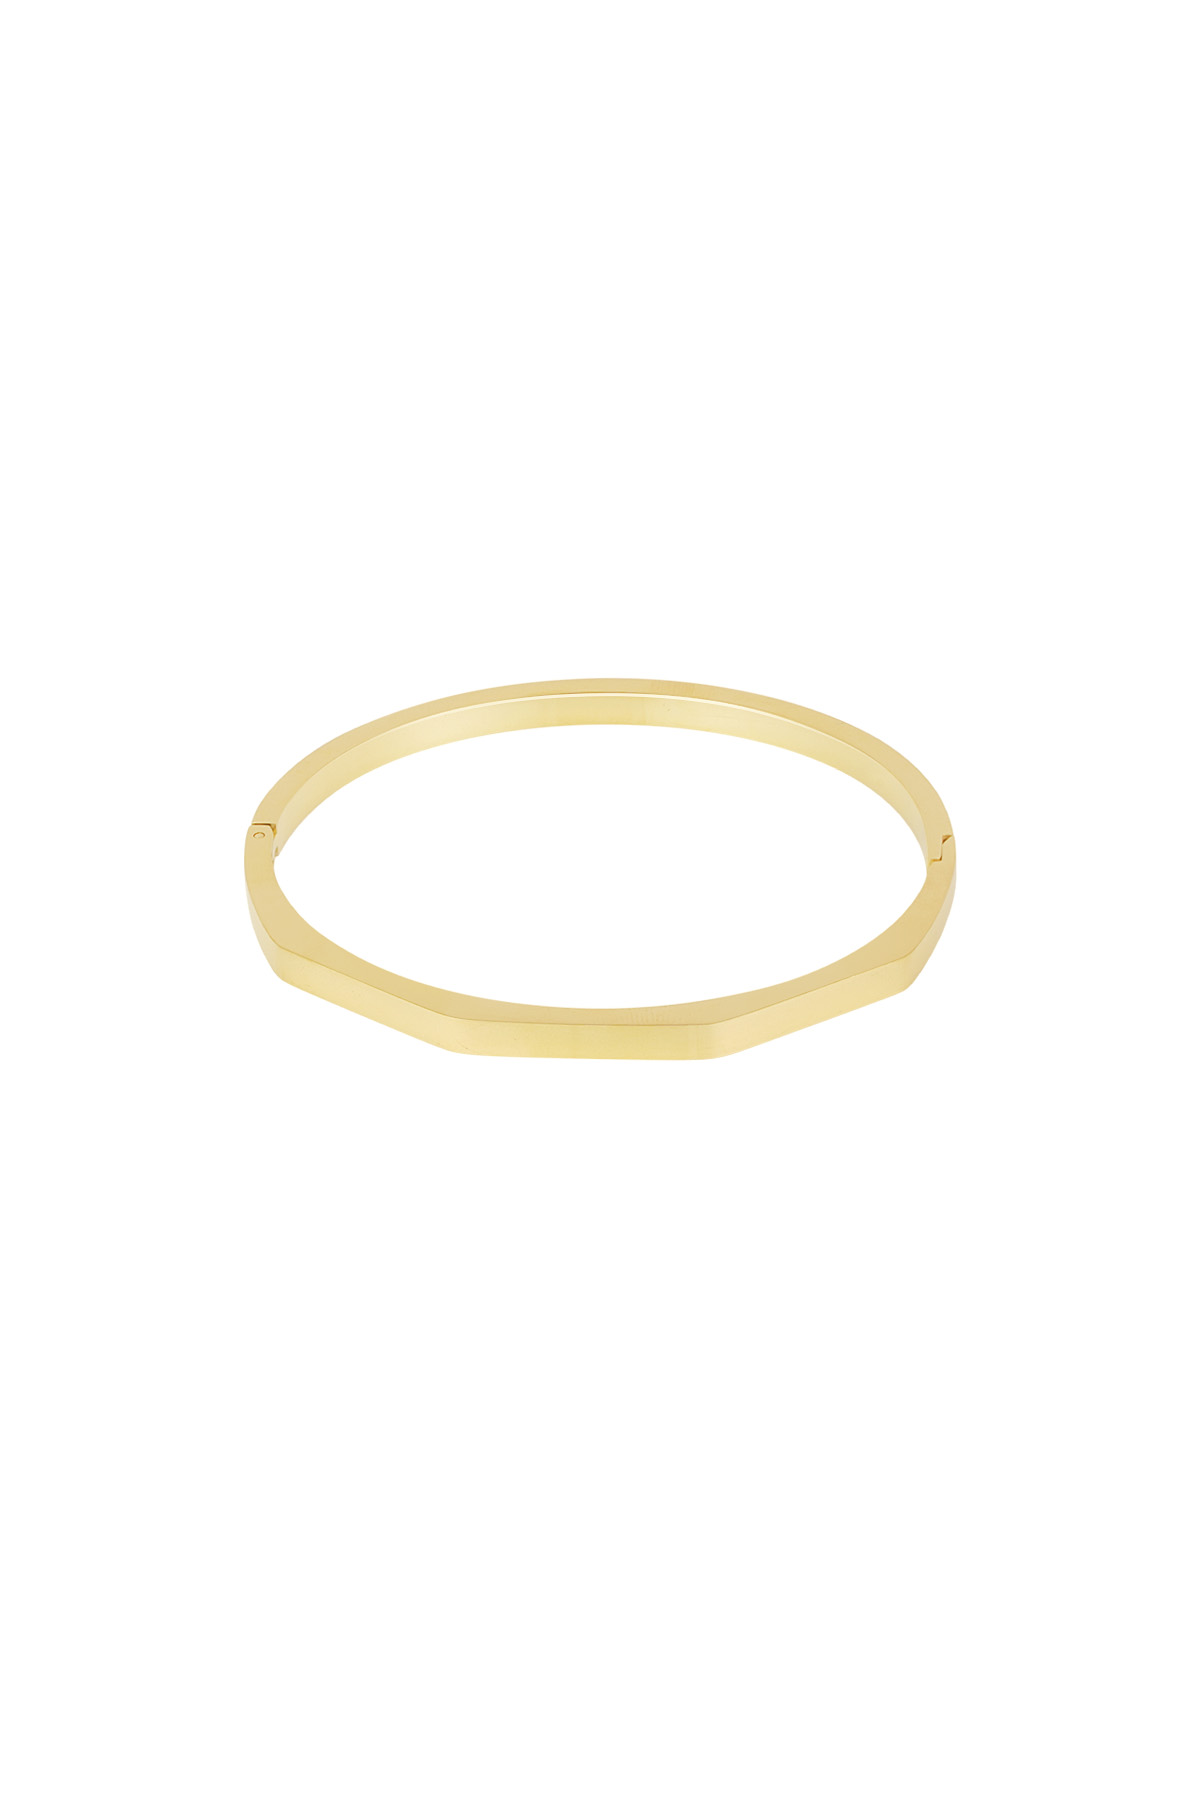 Shaped slave bracelet - gold 